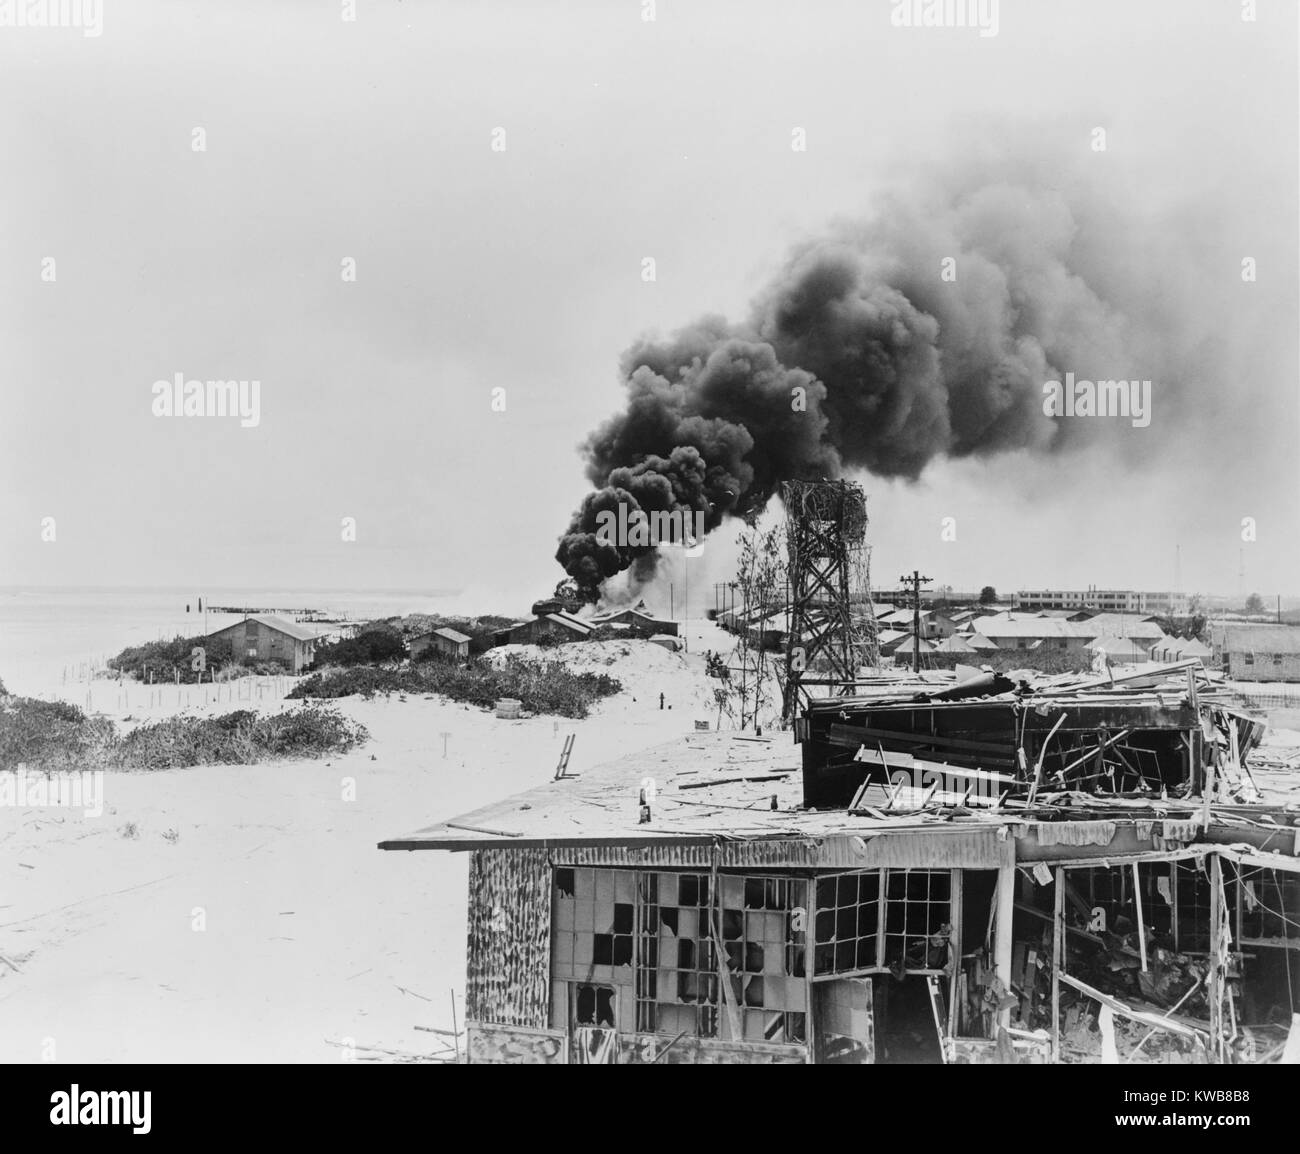 La fumée s'élevant à partir de réservoirs d'huile en feu sur l'île de Sable, à mi-chemin, après l'attaque aérienne japonaise, le 4 juin 1942. Cela a marqué le début de la Bataille de Midway de deux jours, qui a donné lieu à une victoire américaine décisive et le retrait des forces japonaises. La Seconde Guerre mondiale 2. (BSLOC   2014 10 97) Banque D'Images